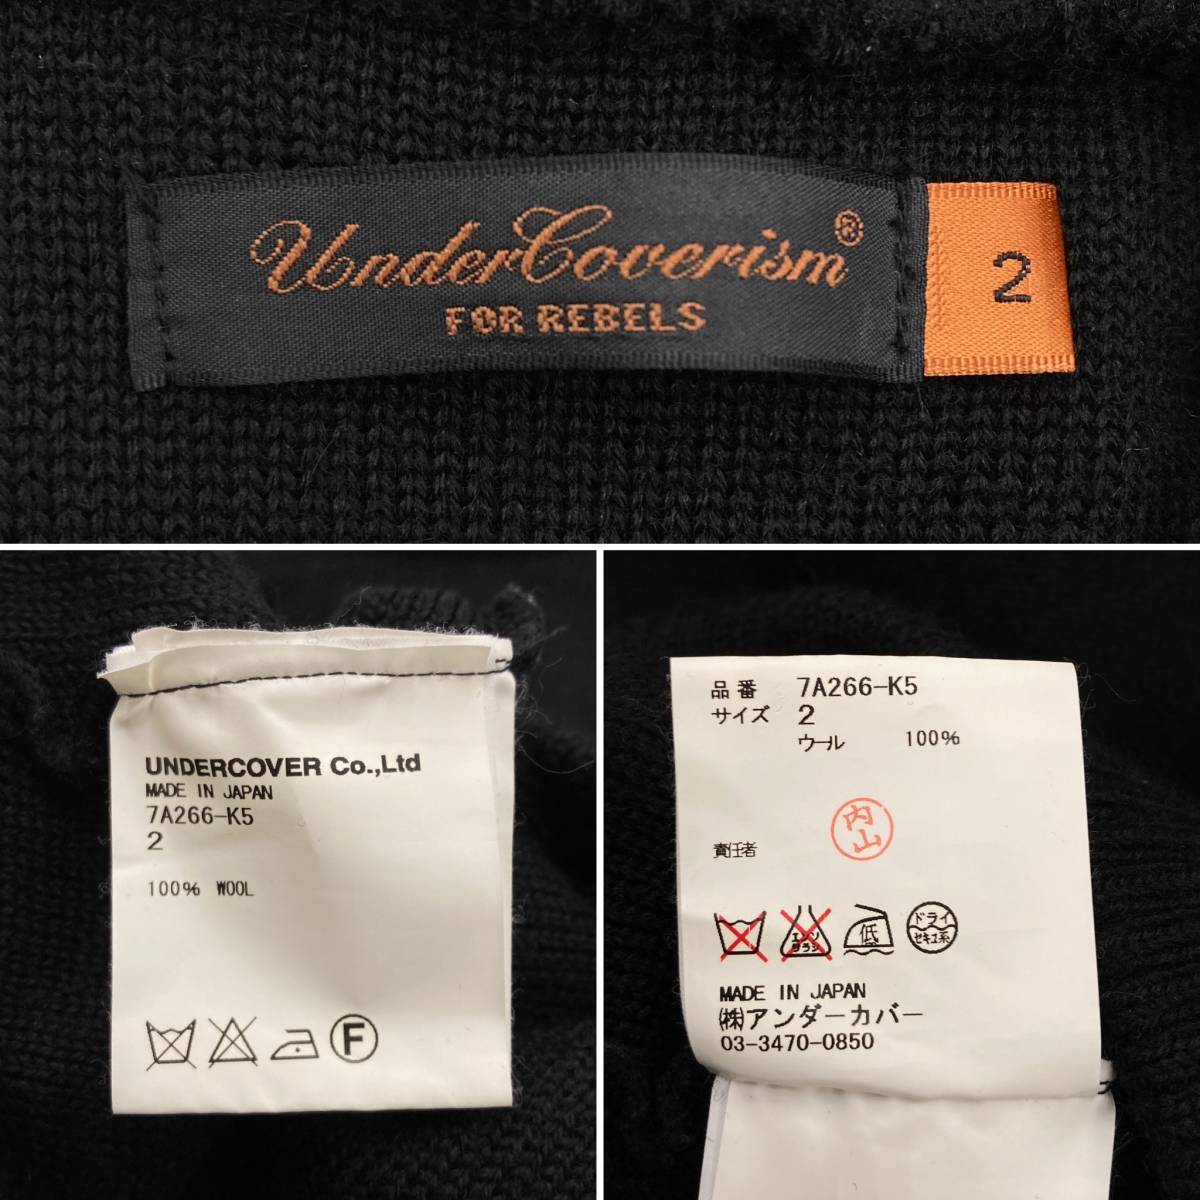 UNDERCOVER 2007AW объем шея ребра переключатель карман вязаный свитер черный чёрный 2 размер undercover VINTAGE archive 1266